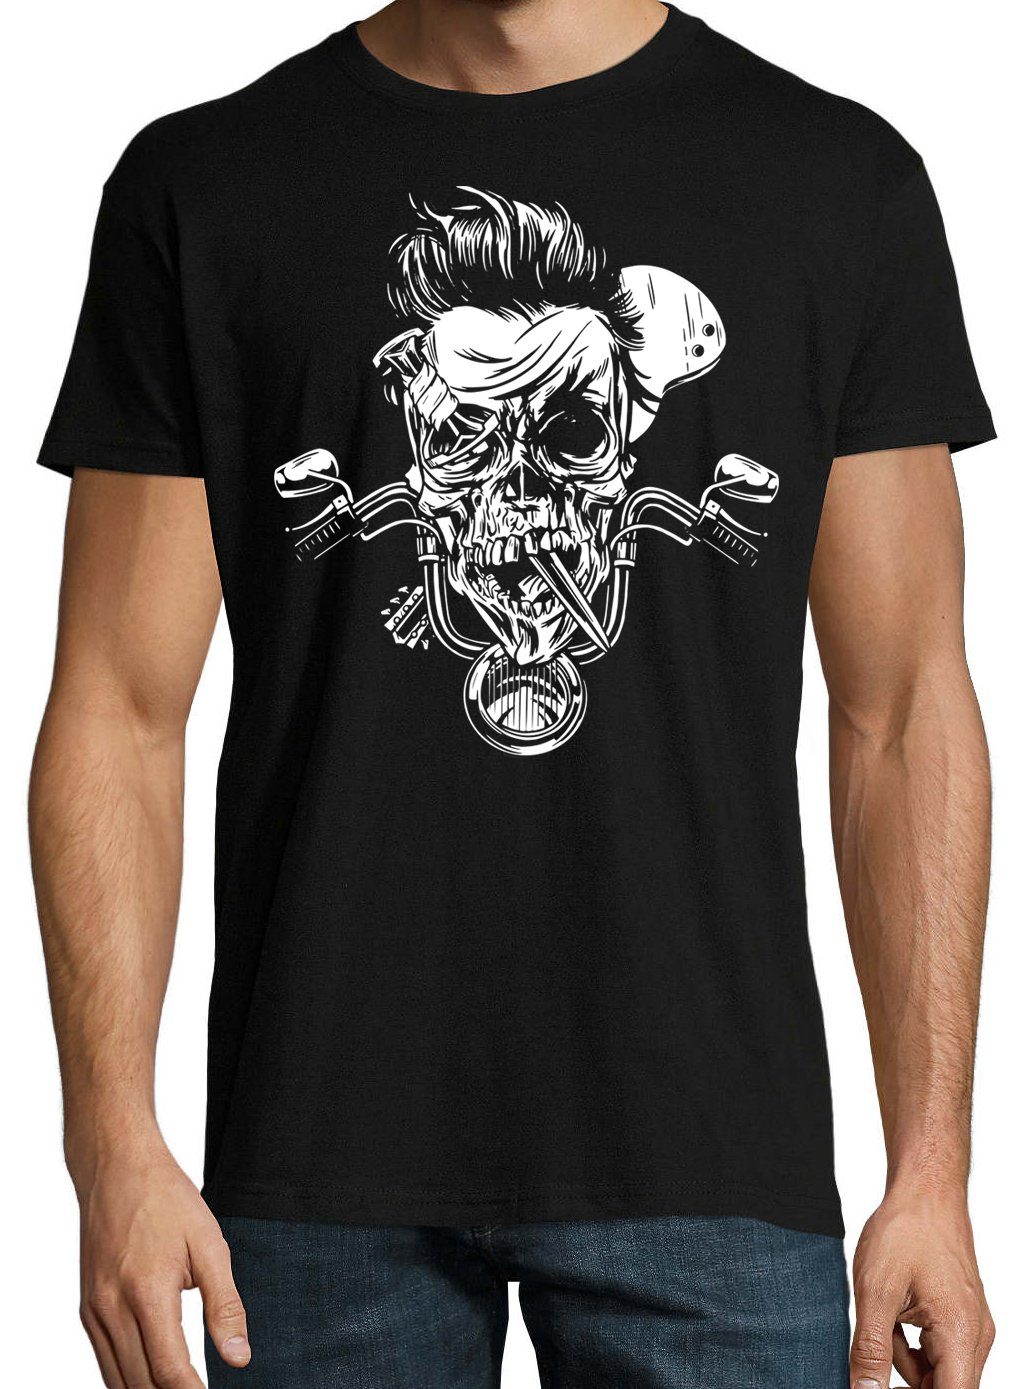 Designz trendigem Frontprint Biker mit Skull Schwarz Shirt T-Shirt Herren Youth Zombie